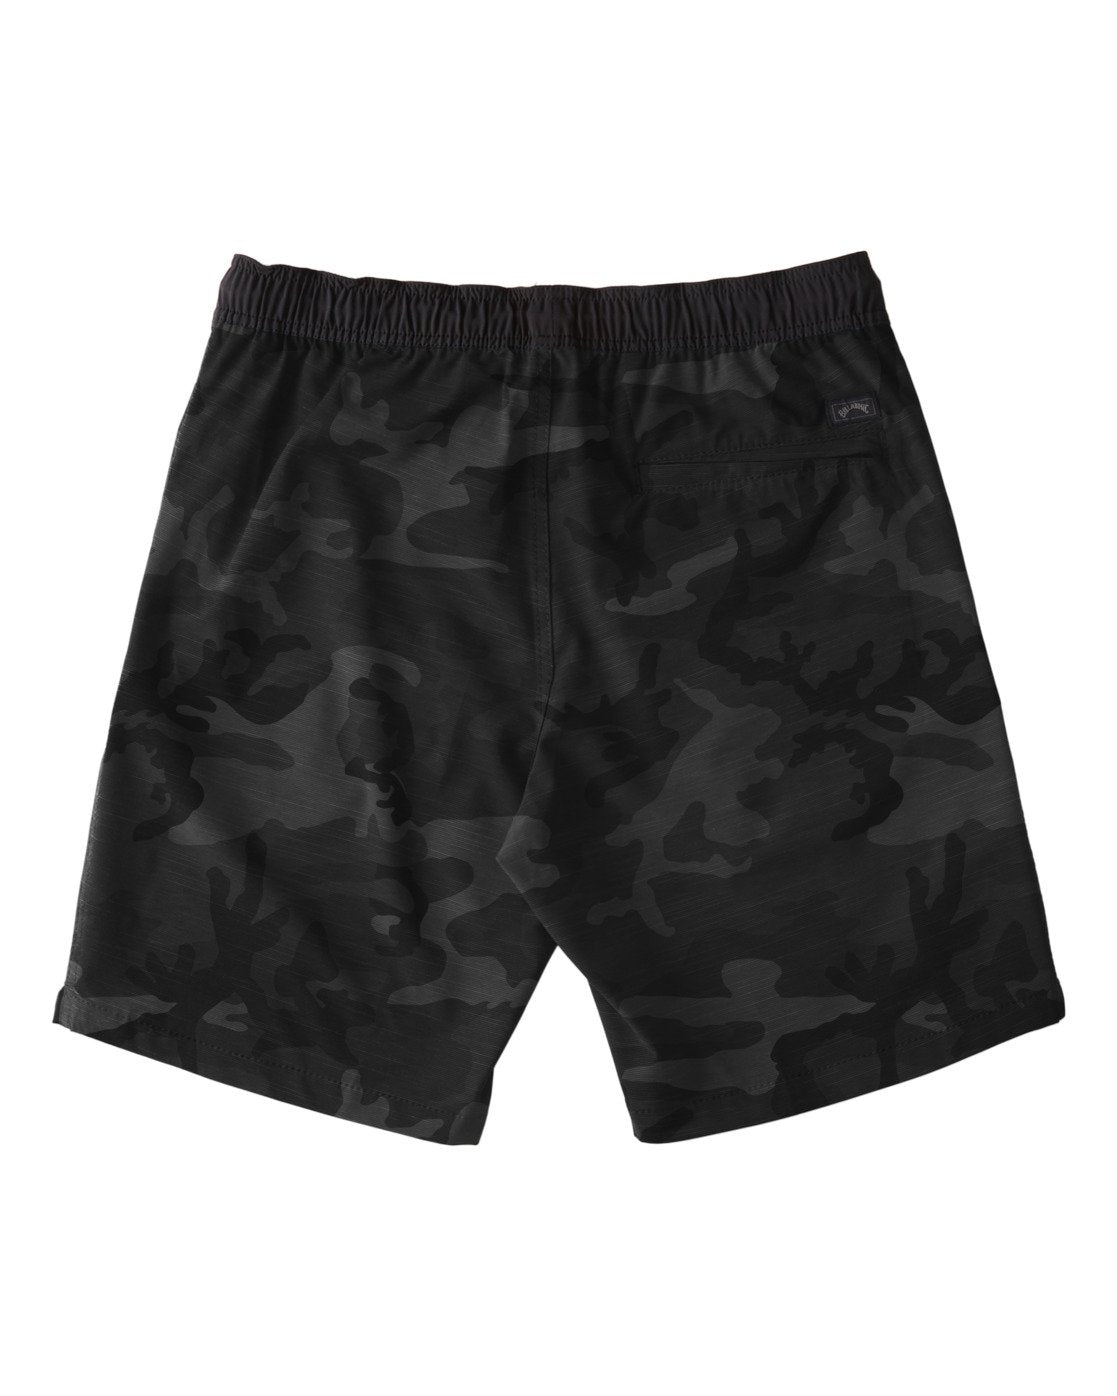 Billabong Crossfire Elastic Shorts - Black Camo